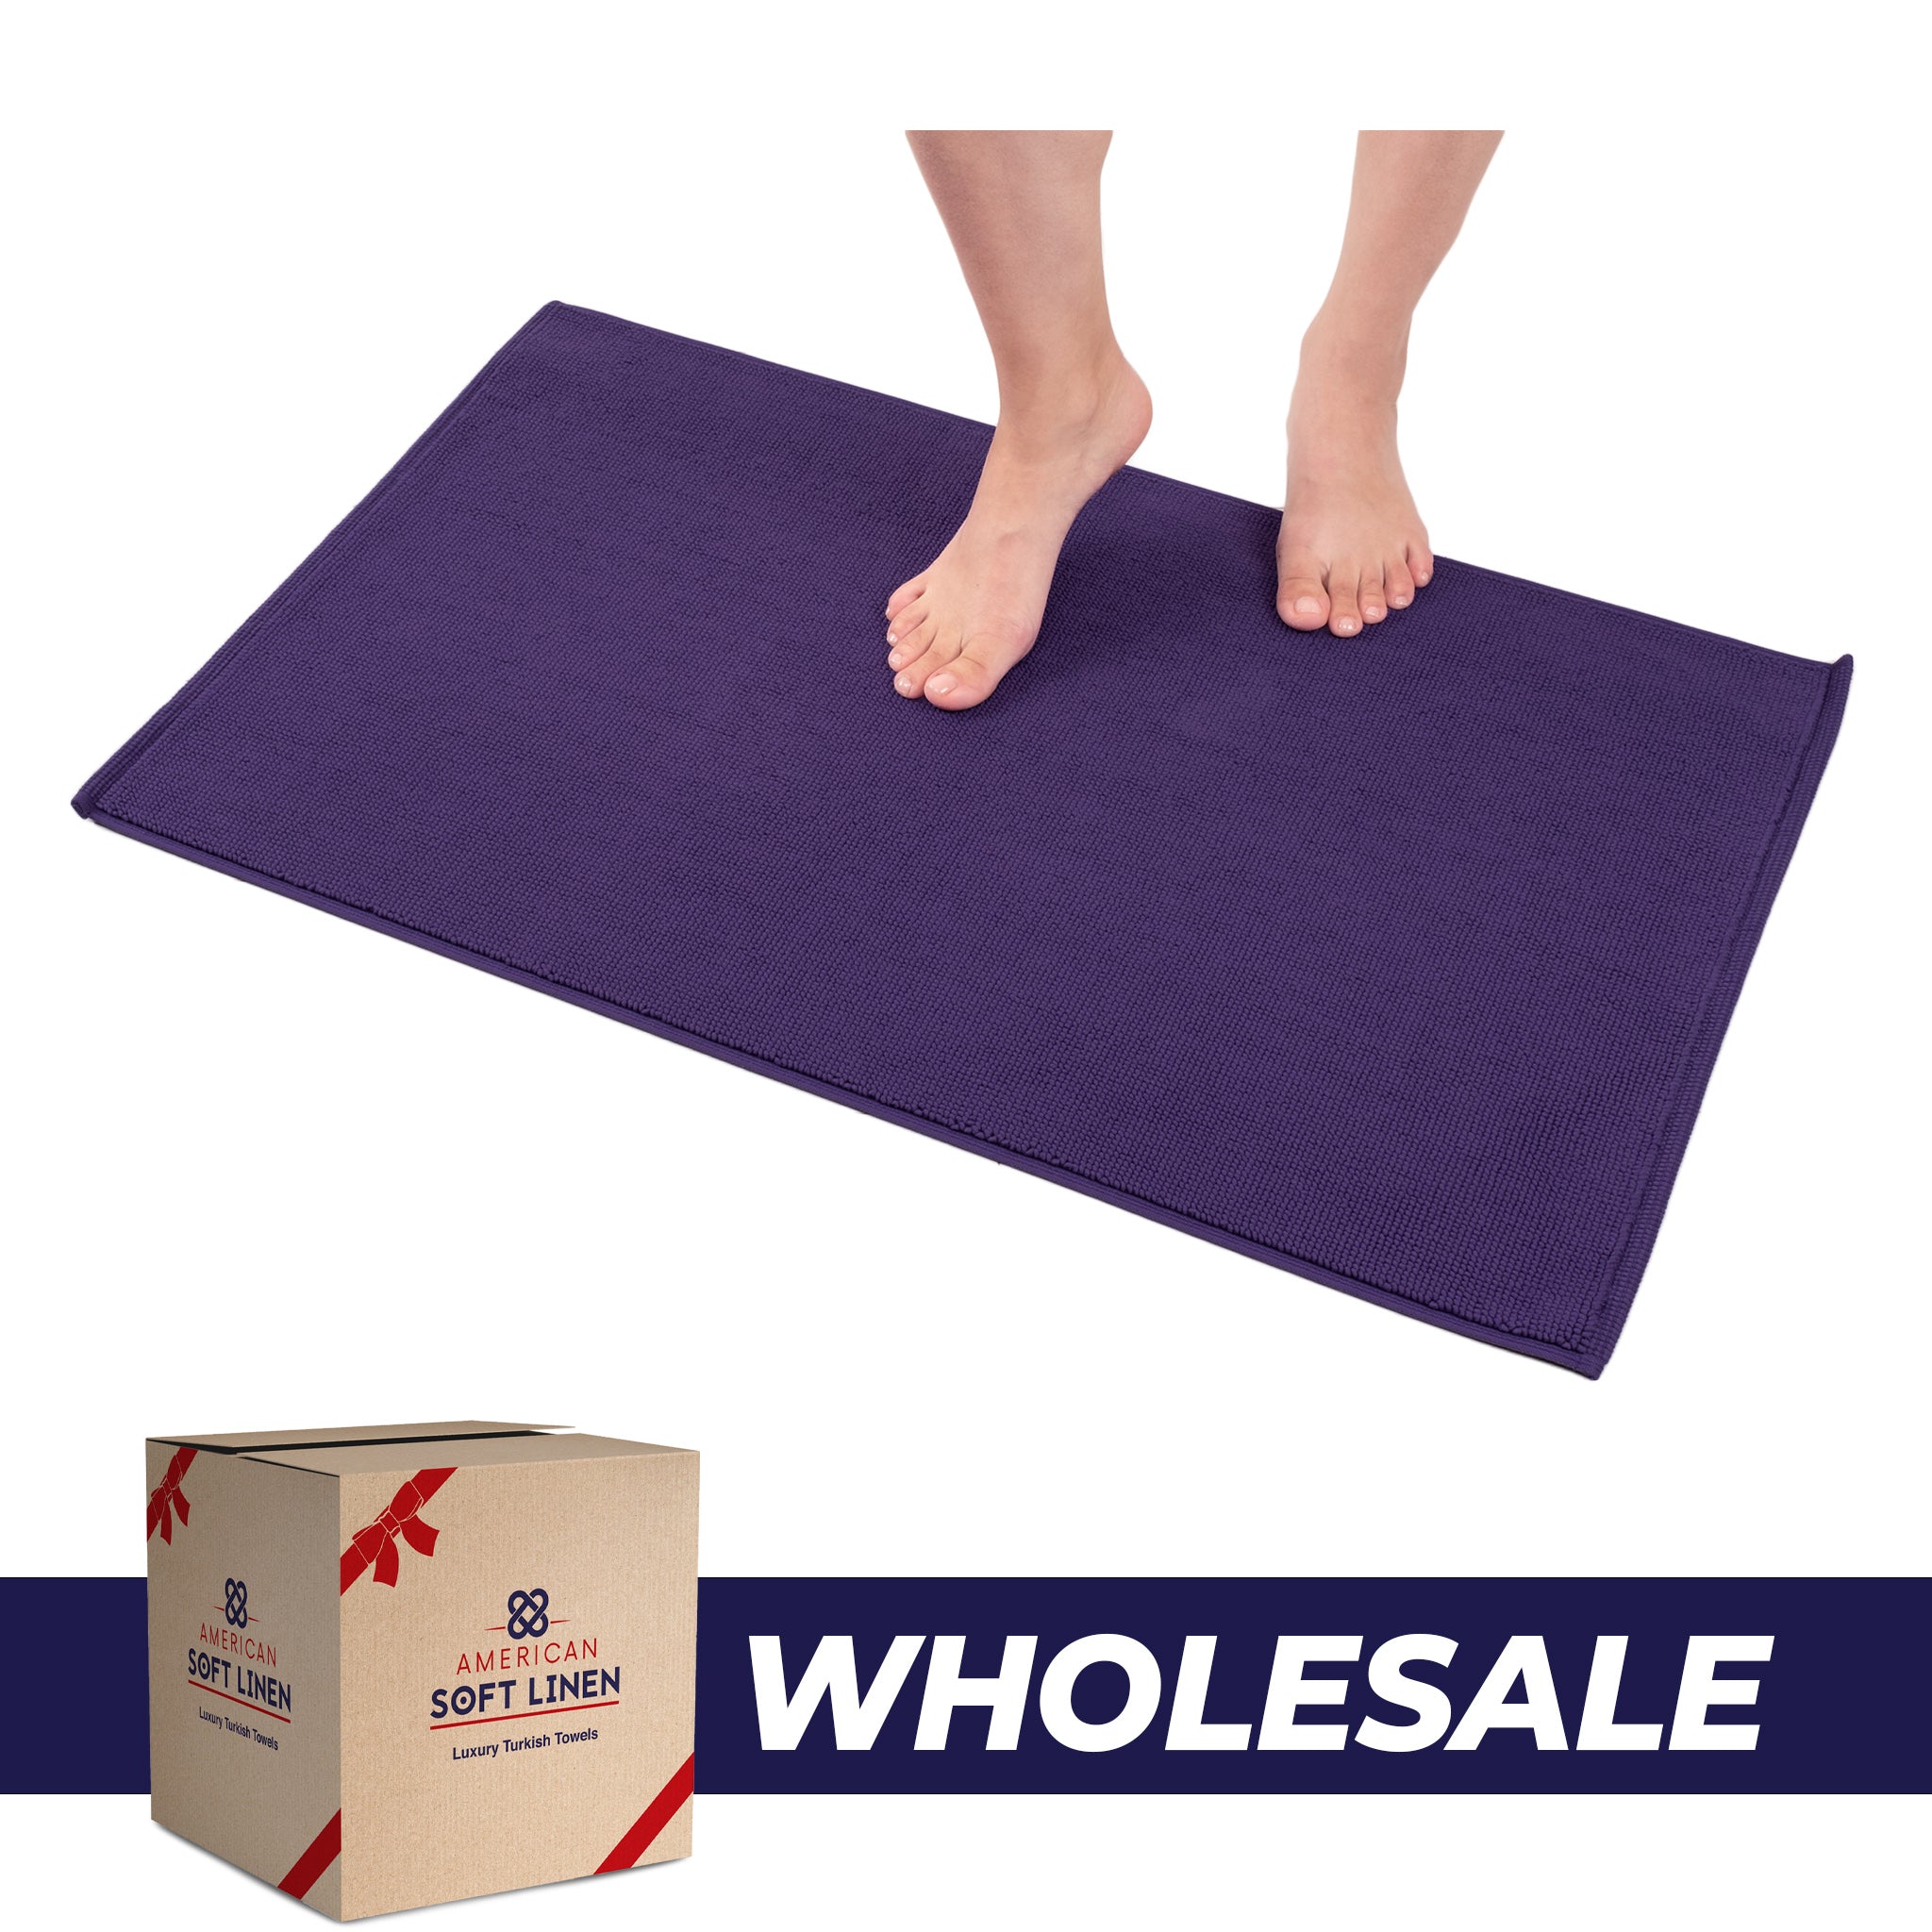 American Soft Linen Non-slip 20x34 100% Cotton Bath Rug Wholesale purple-0